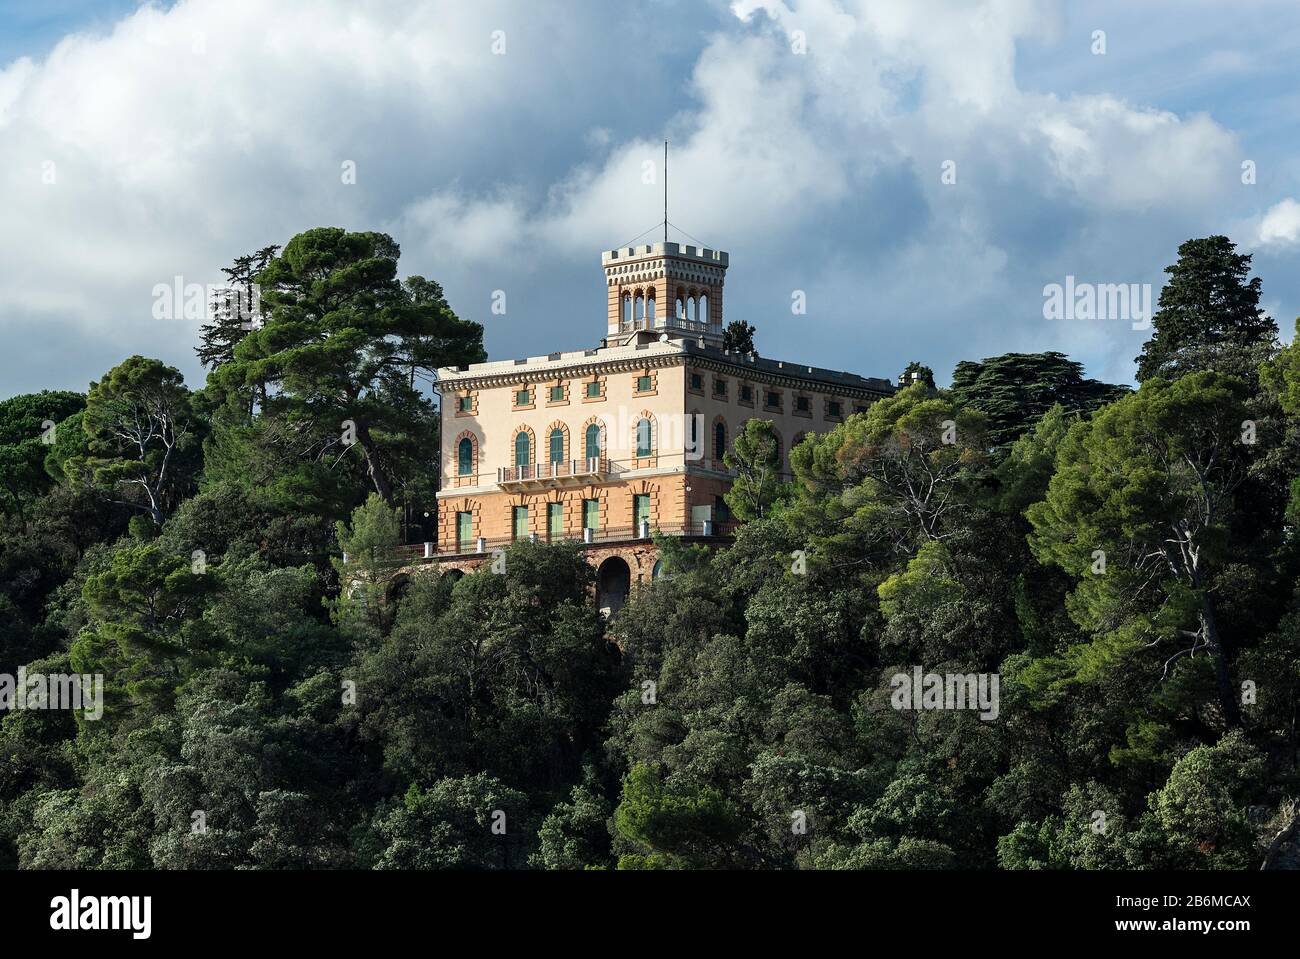 Maison à flanc de colline surplombant la mer Ligurienne. Banque D'Images